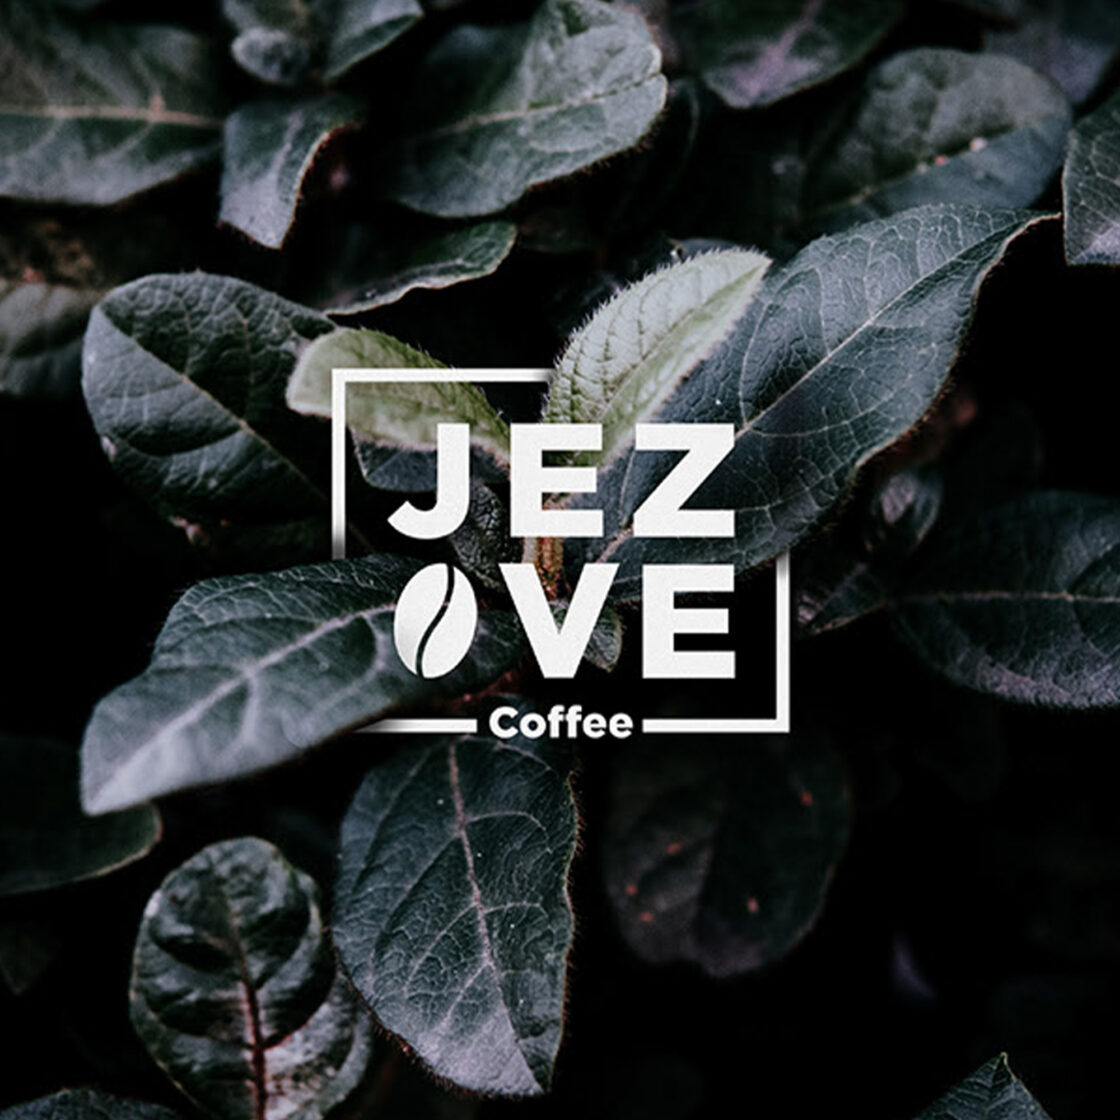 Jezve Coffee